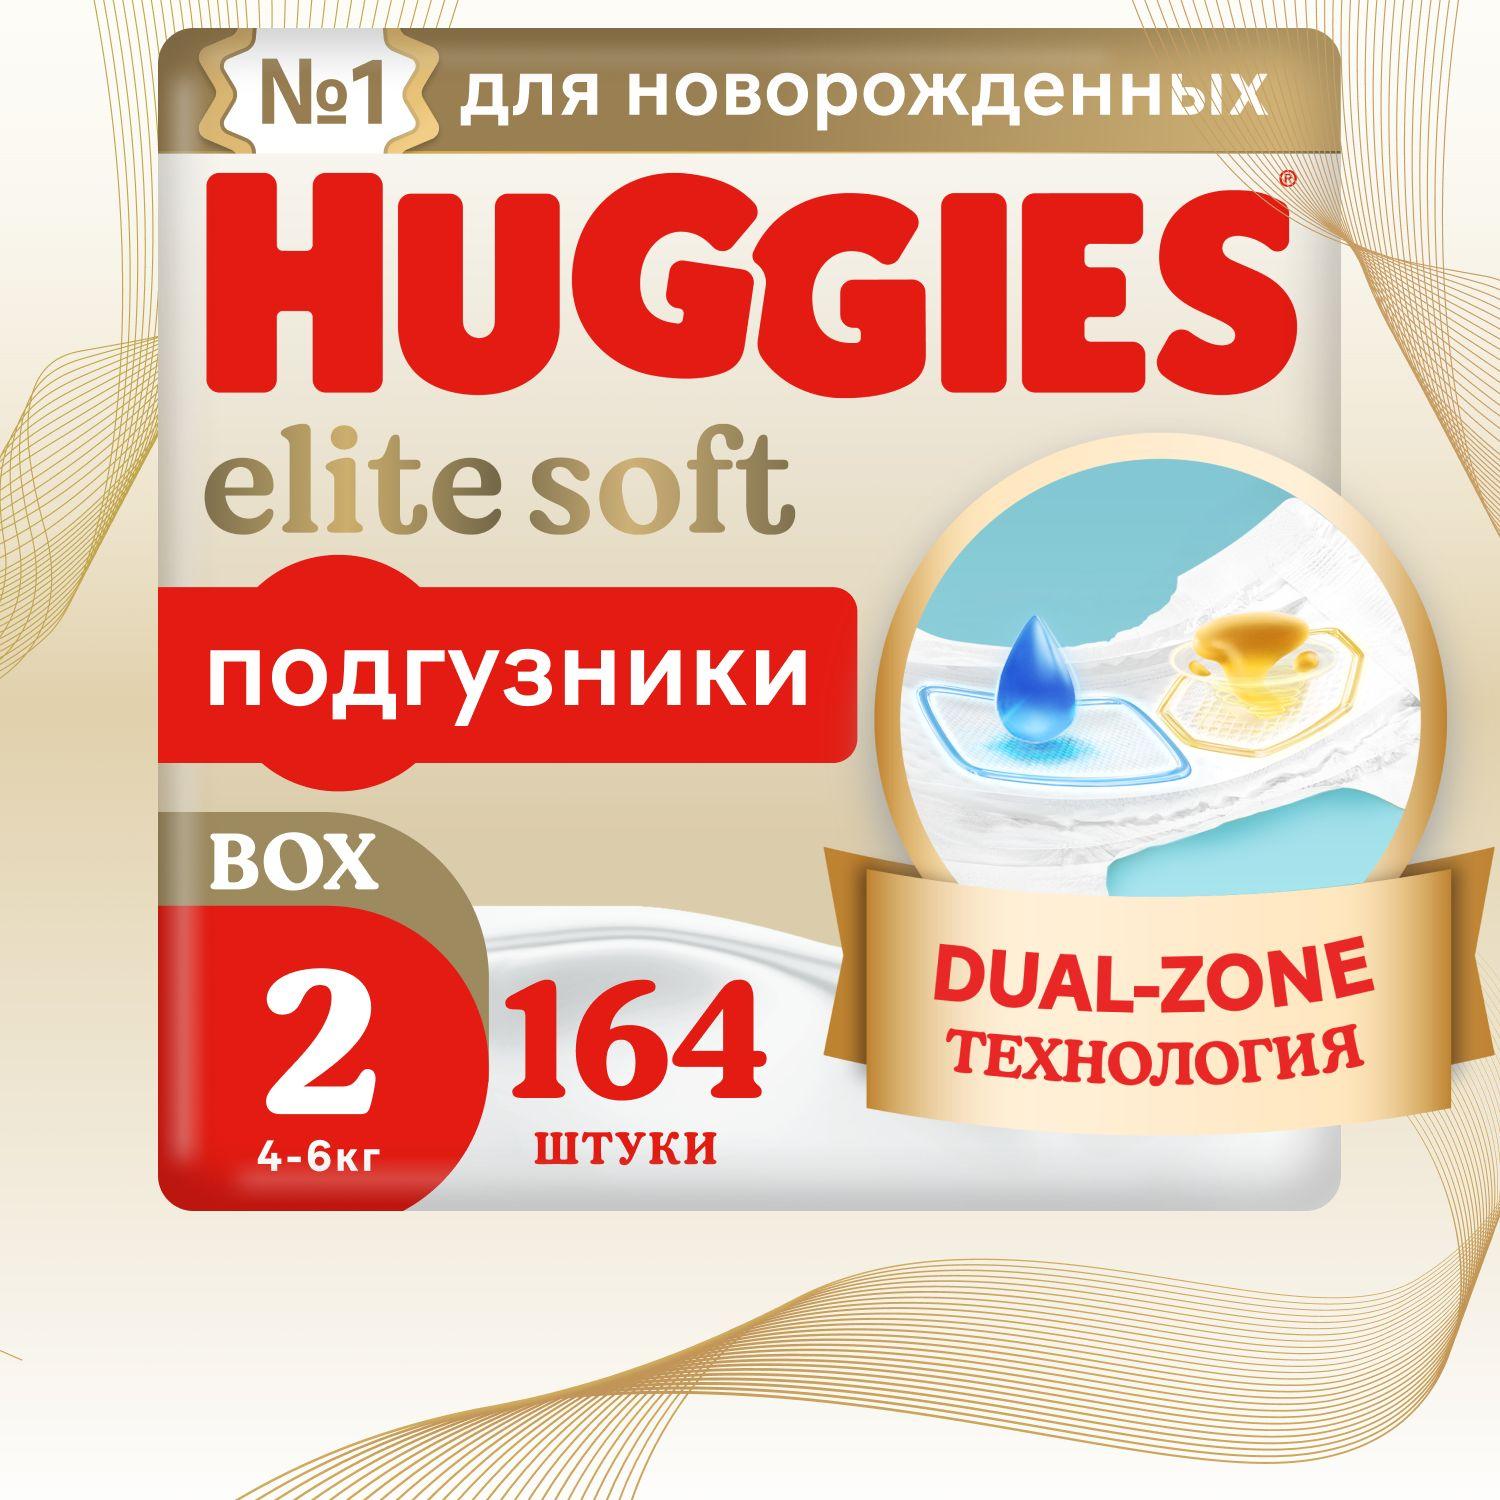 Huggies | Подгузники для новорожденных  Huggies Elite Soft 2 S размер, 4-6 кг, 164 шт